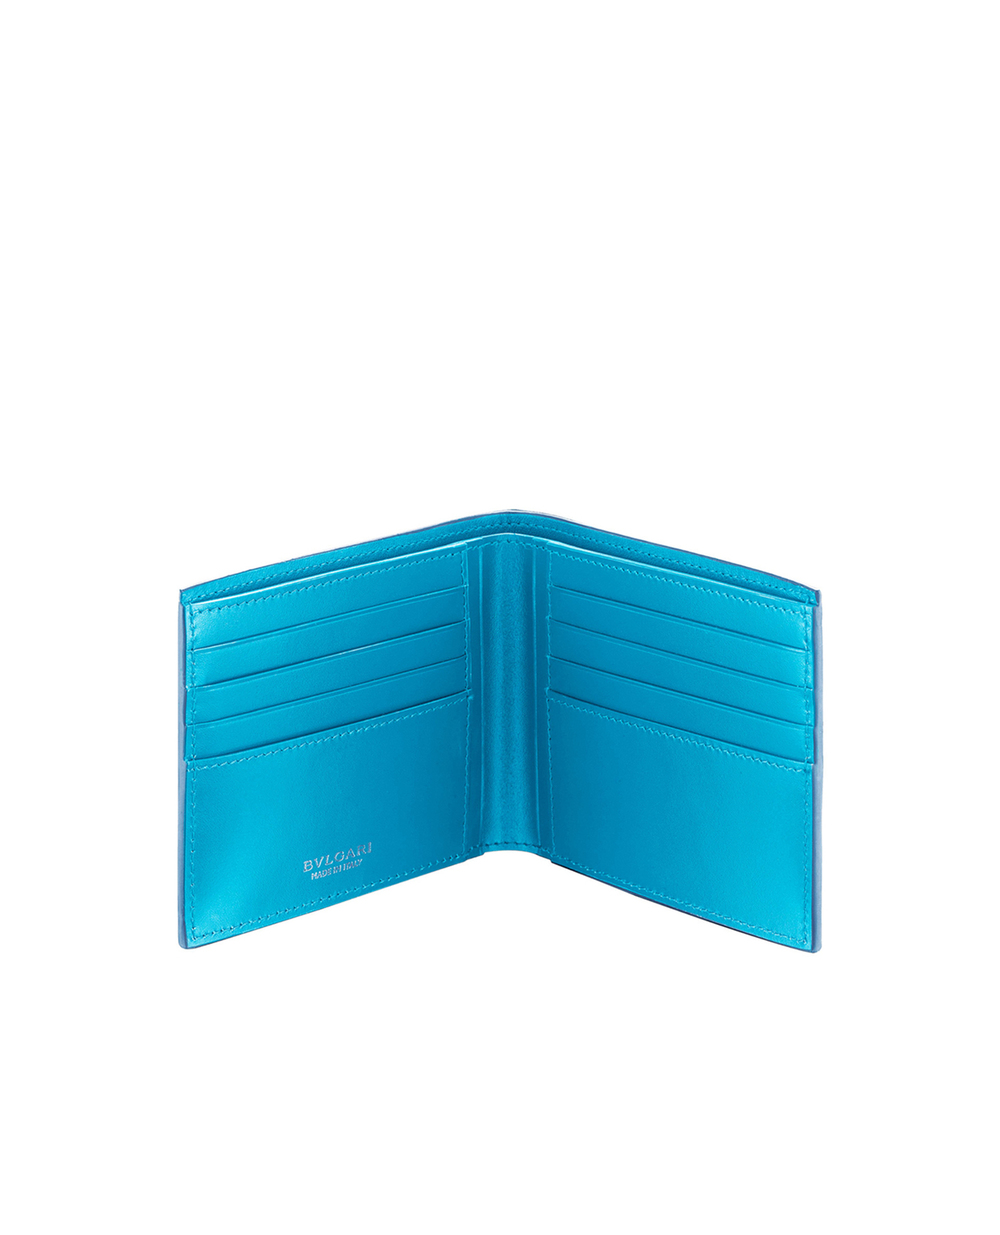 Бумажник Bulgari 290076, синий цвет • Купить в интернет-магазине Kameron